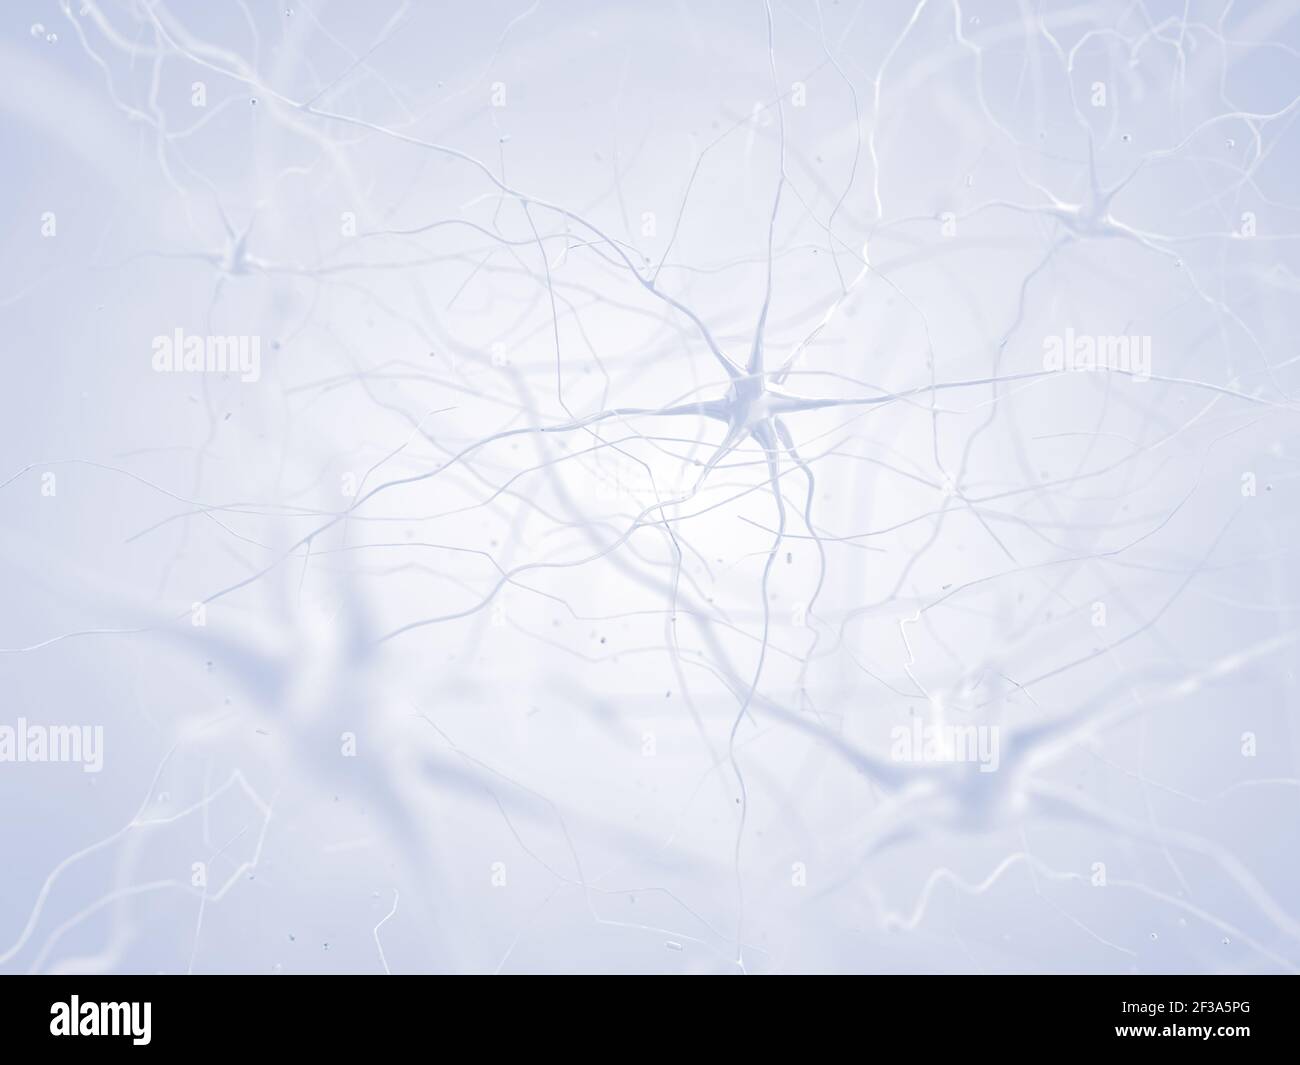 Células nerviosas del cerebro humano. Neuronas conectadas en la red neural. Foto de stock